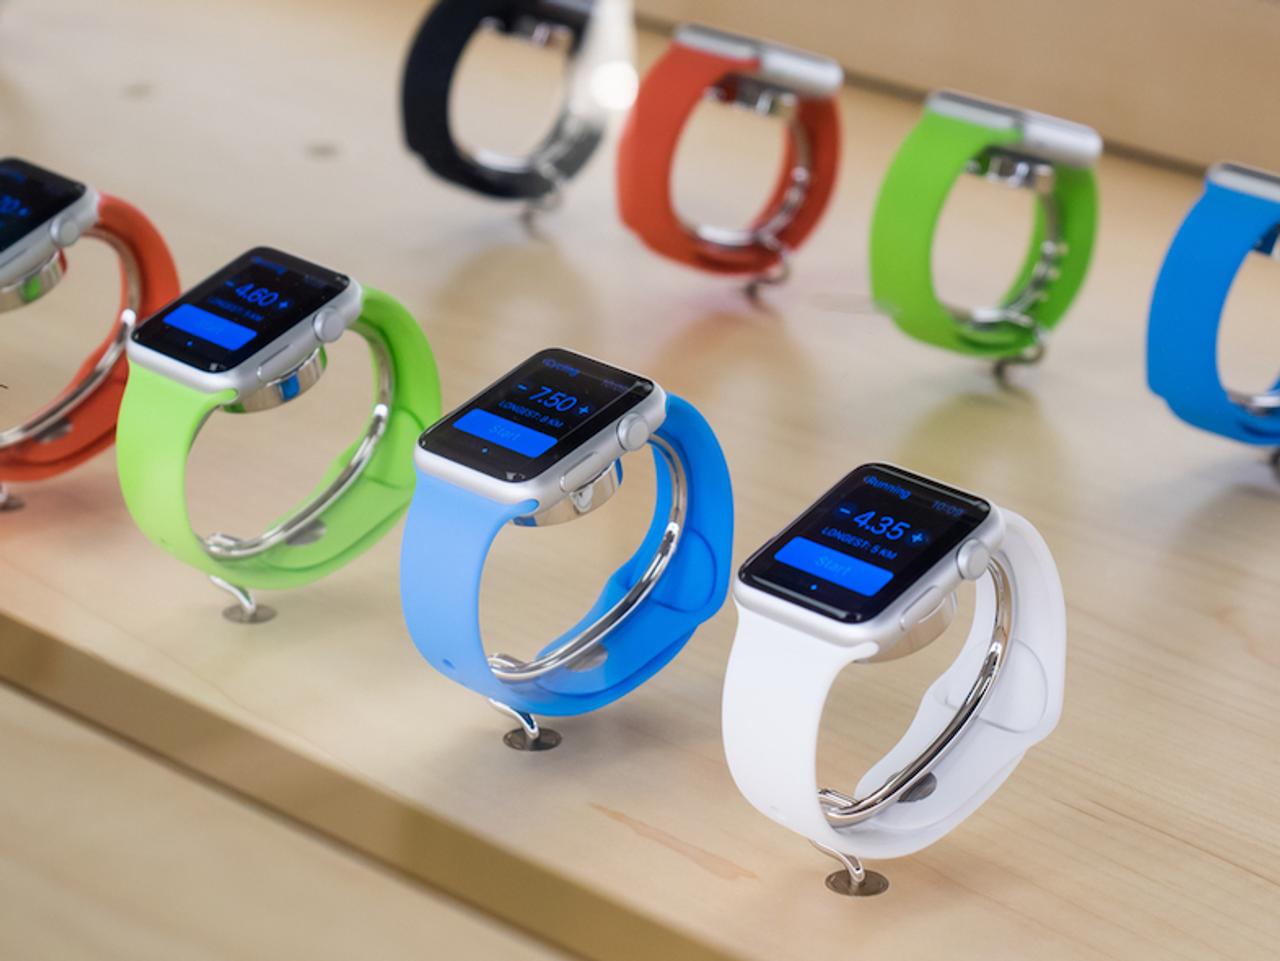 Apple Watch 3はセルラー対応モデルと非対応モデルで今年後半に登場するも、デザイン面での変更はほぼなさそう...？